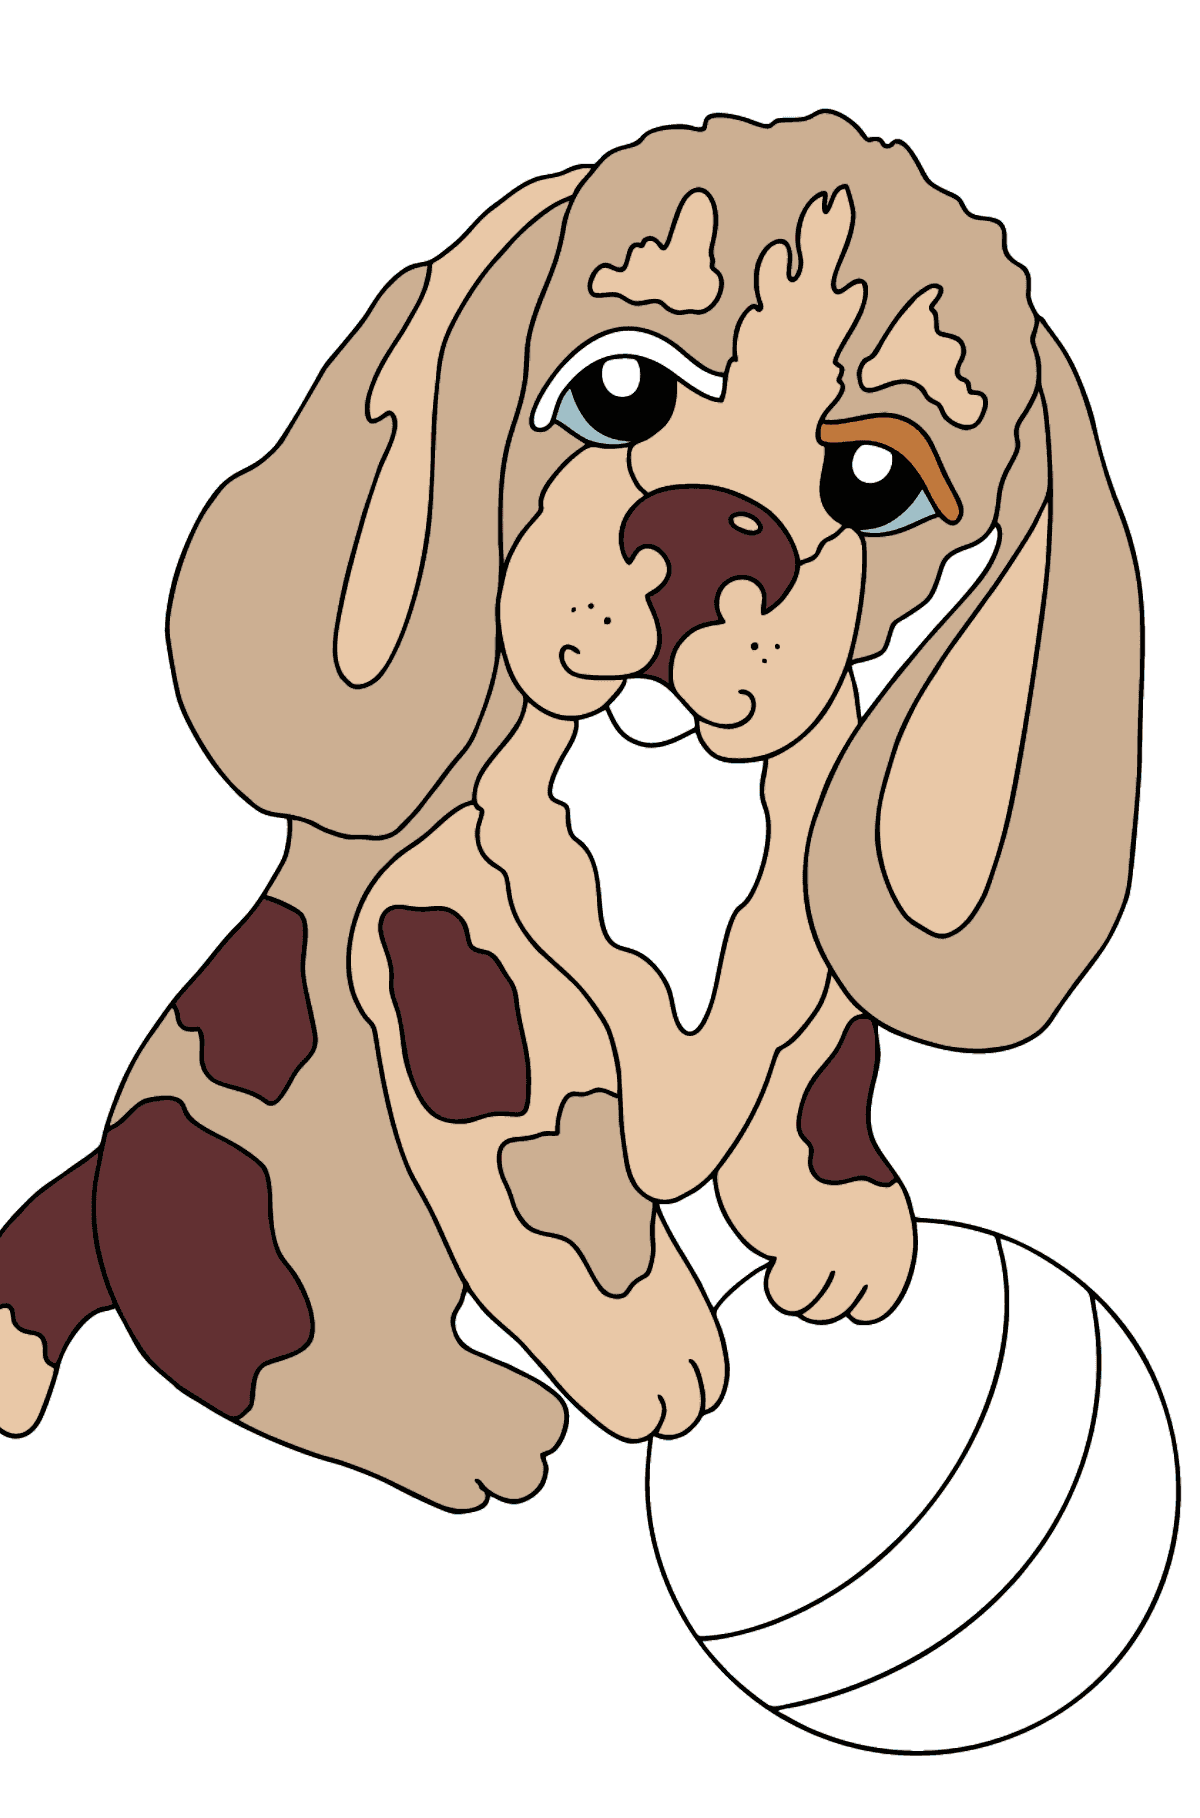 Desenho de cachorrinho para colorir (fácil) - Imagens para Colorir para Crianças